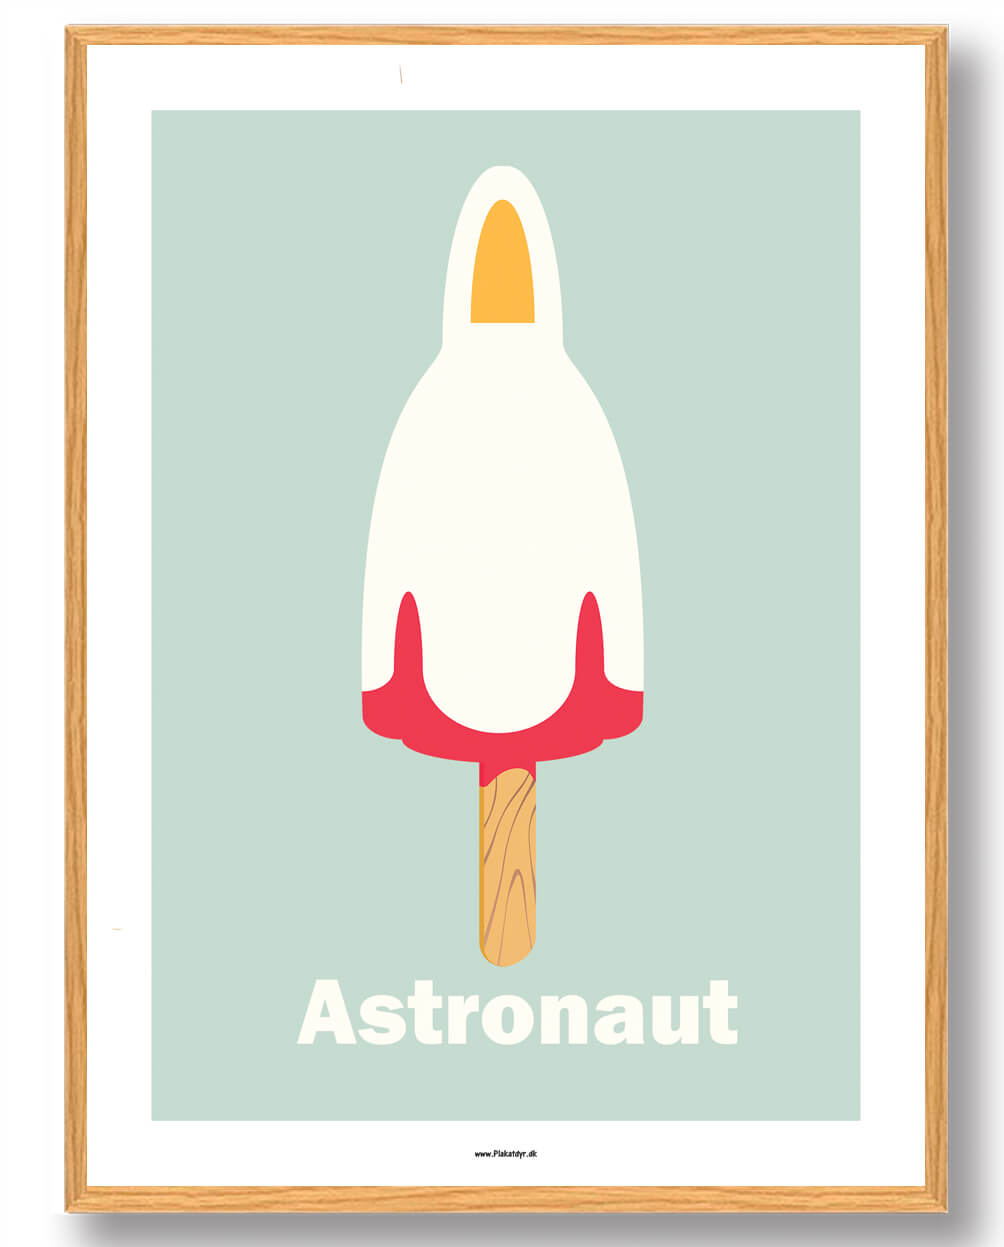 Astronaut is - plakat